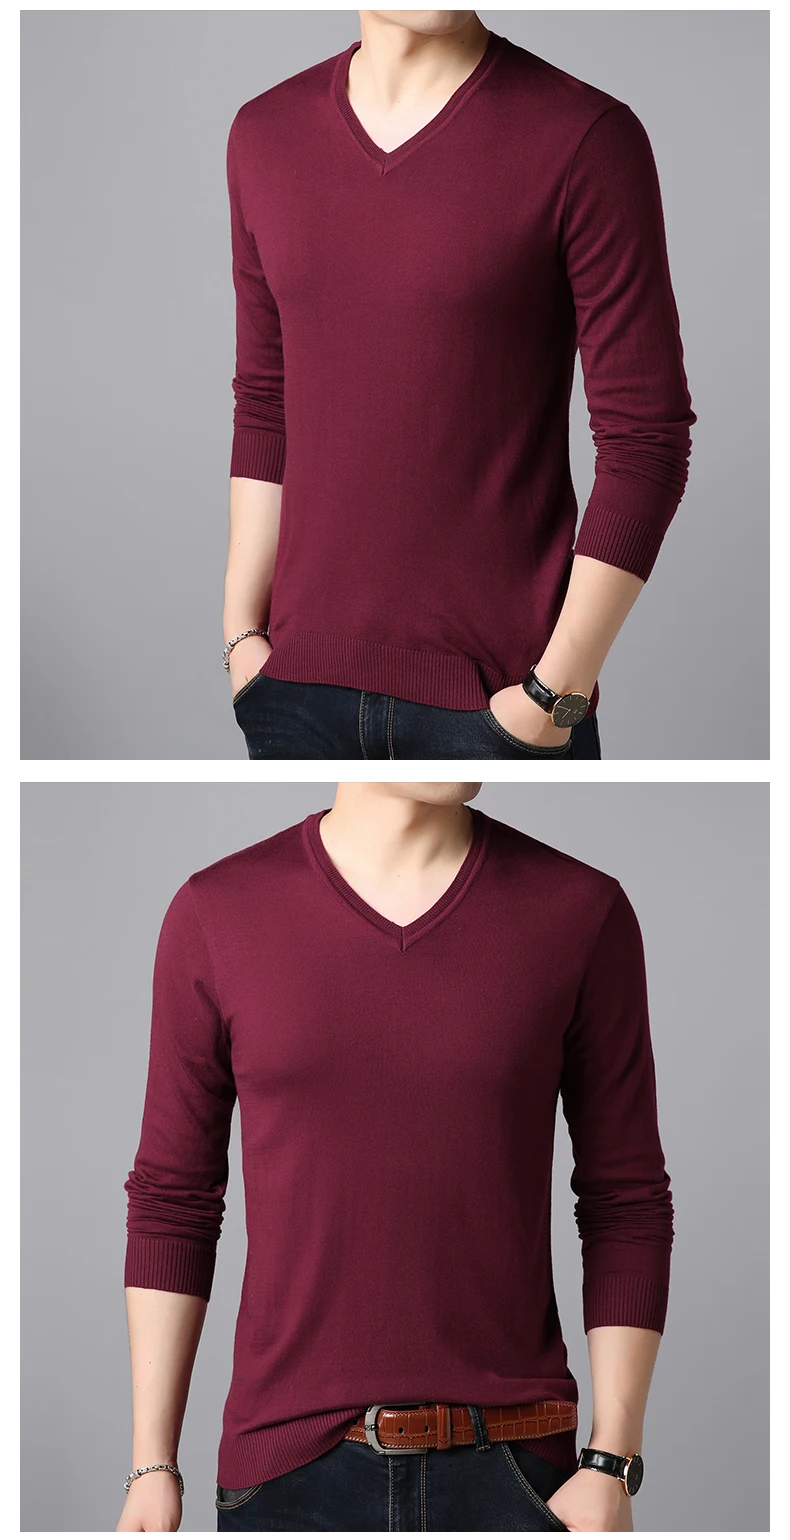 Мода 2019 г. бренд свитеры для женщин для мужчин пуловеры V образным вырезом сплошной цвет Slim Fit вязаные Джемперы зима корейский стиль повсе